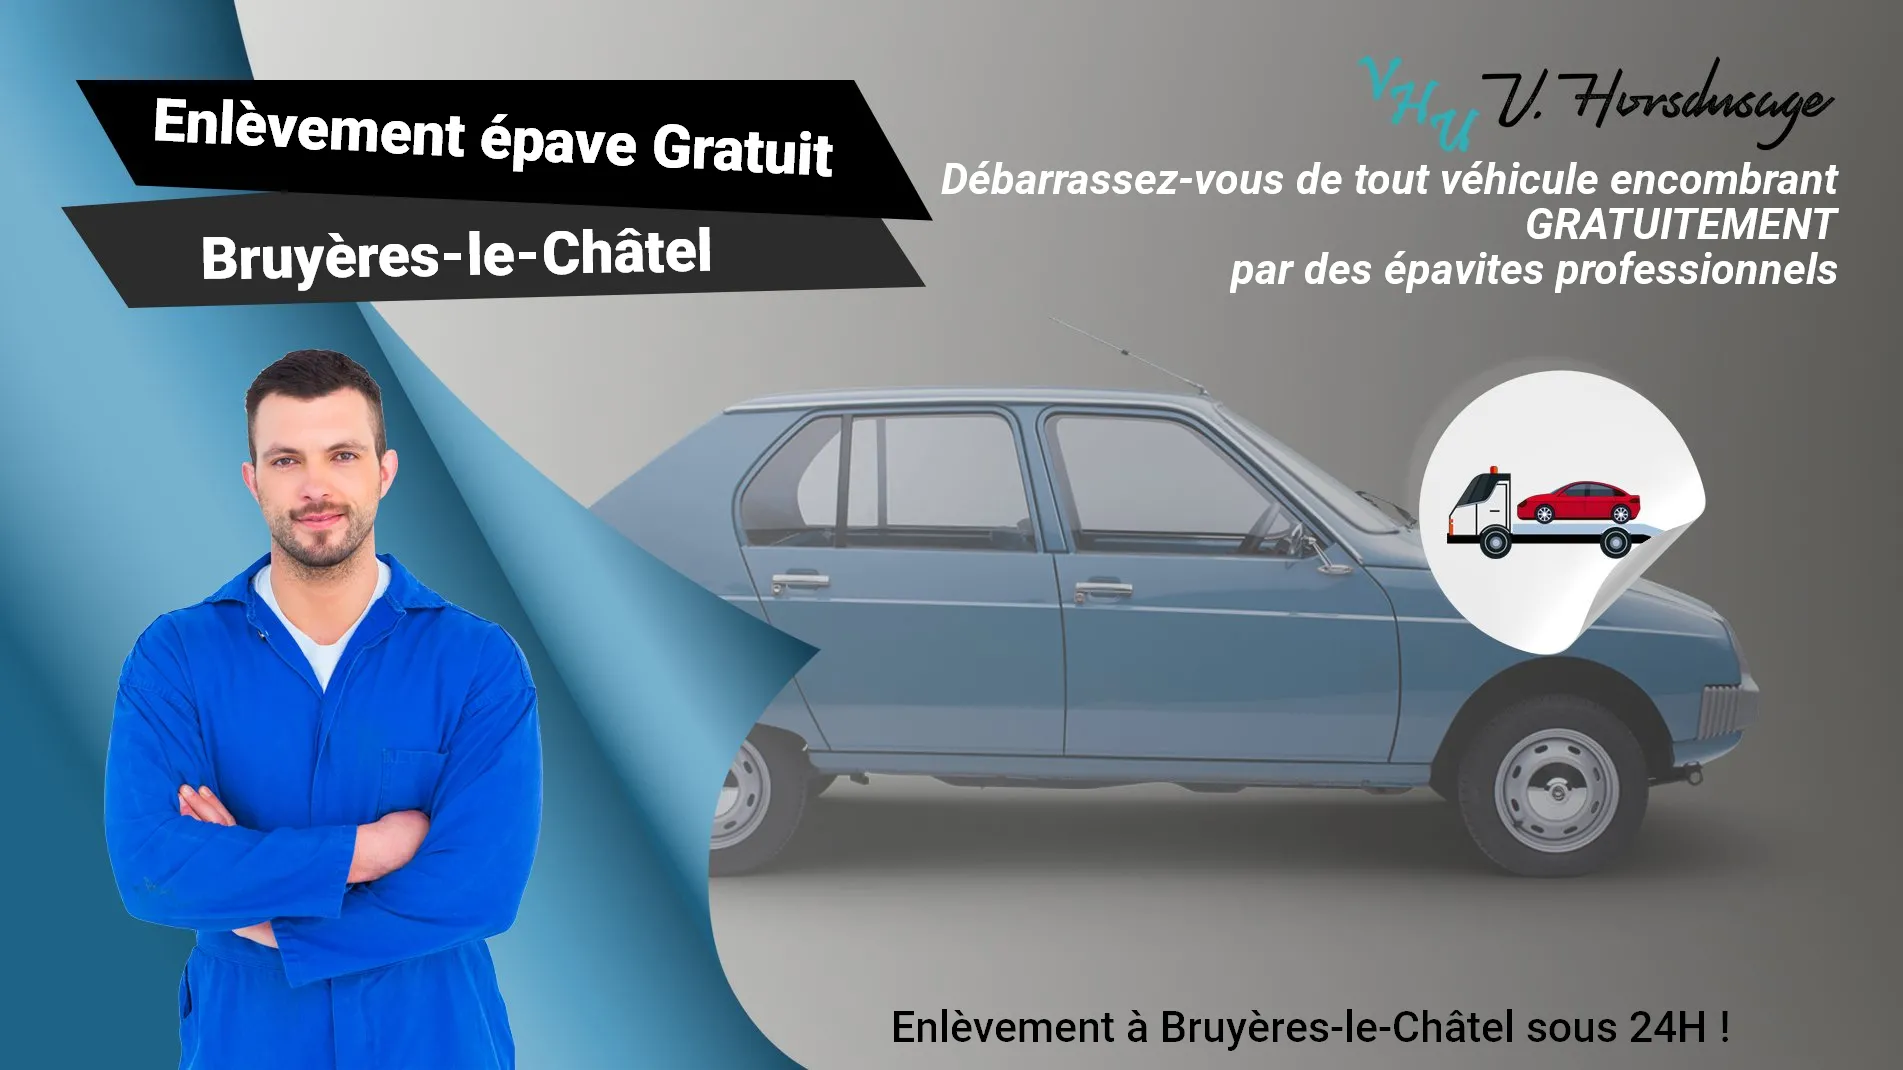 Pour un enlèvement gratuit à Bruyères-le-Châtel, contactez nos épavistes agréé VHU